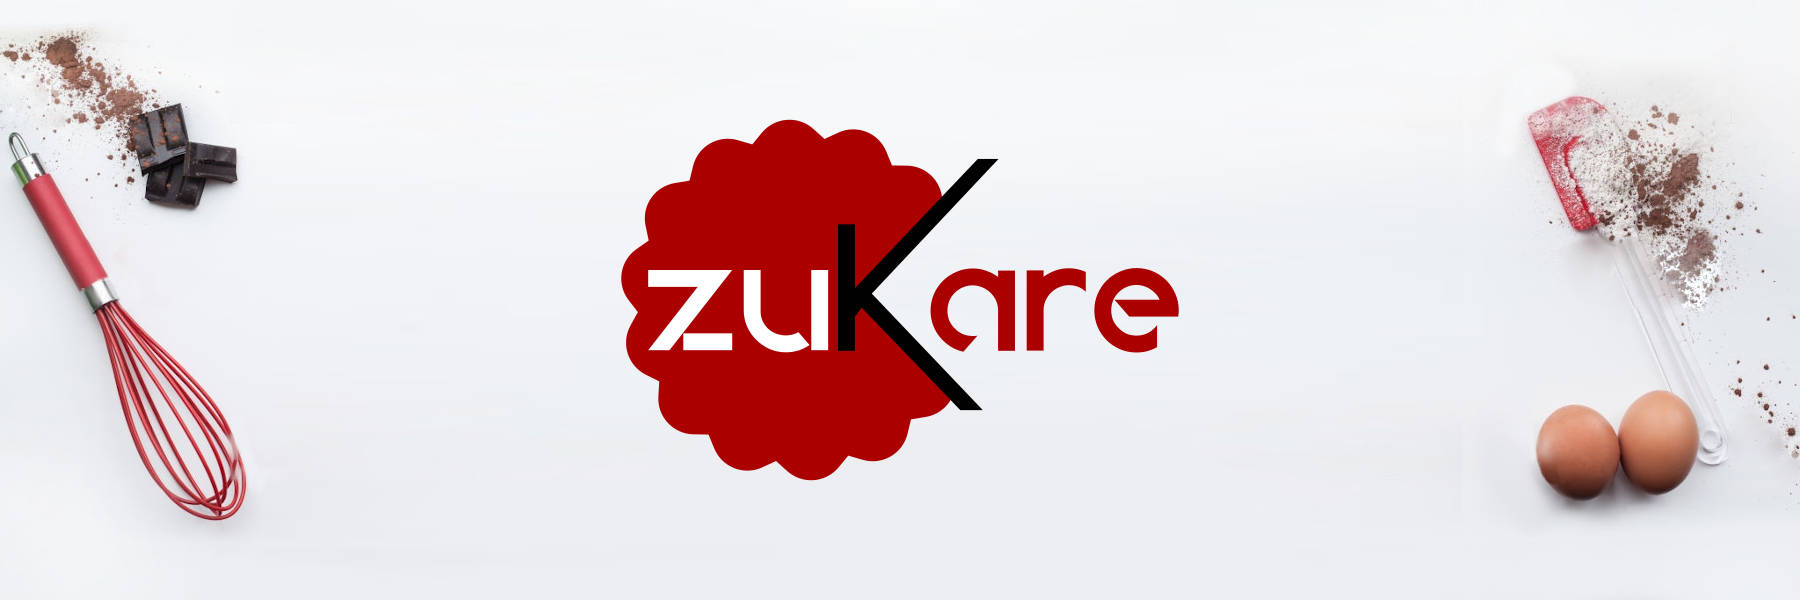 zukare_header